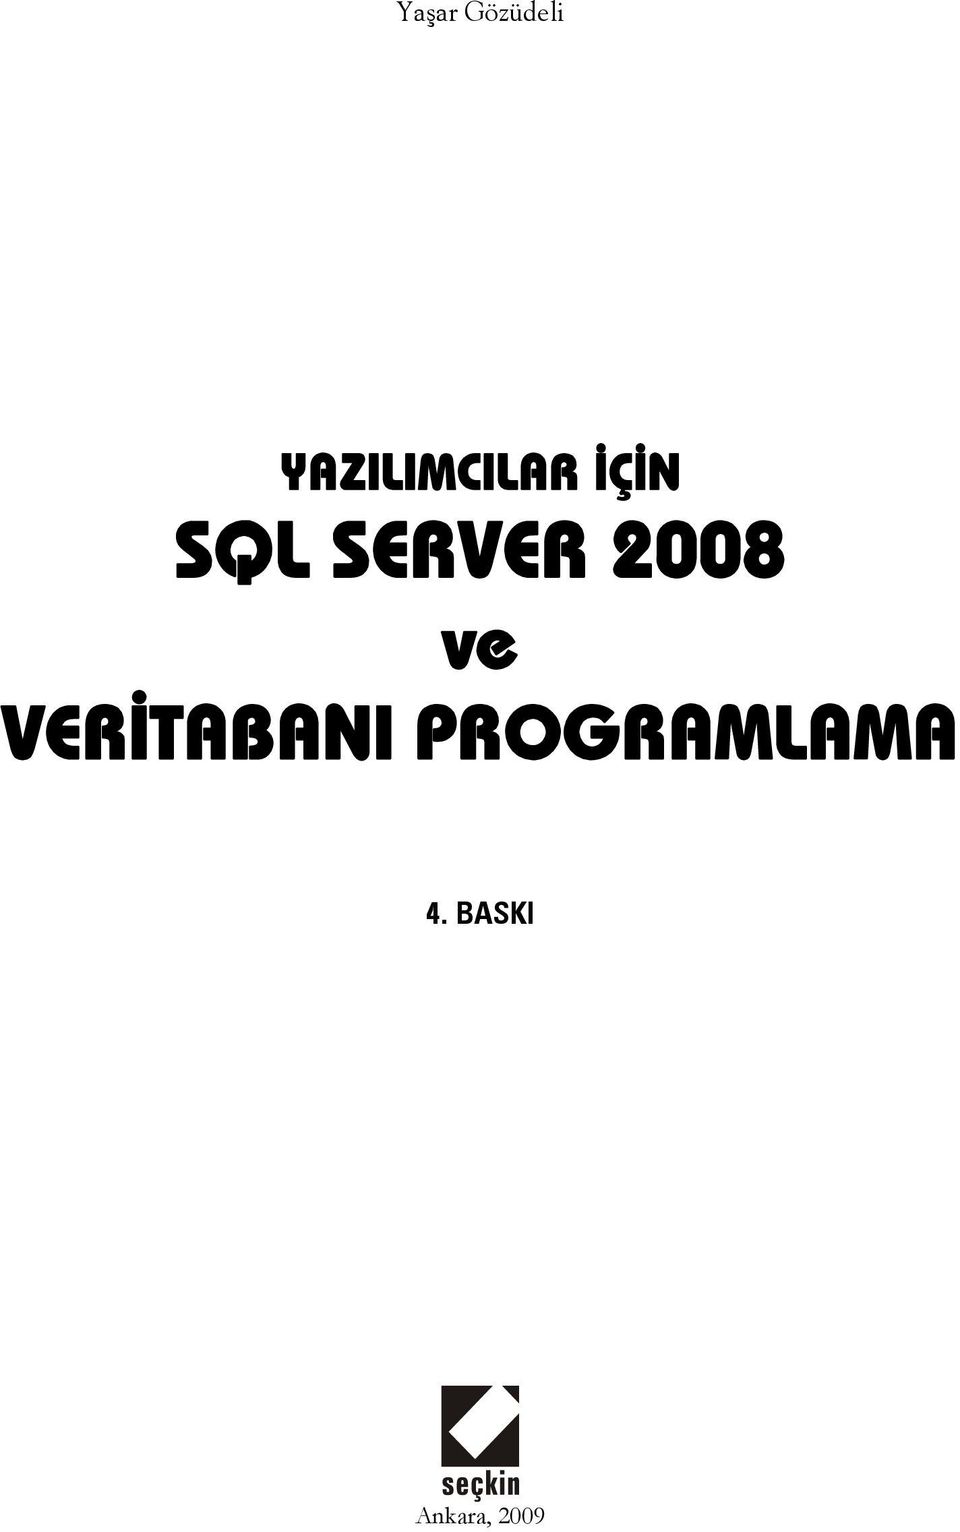 SERVER 2008 ve